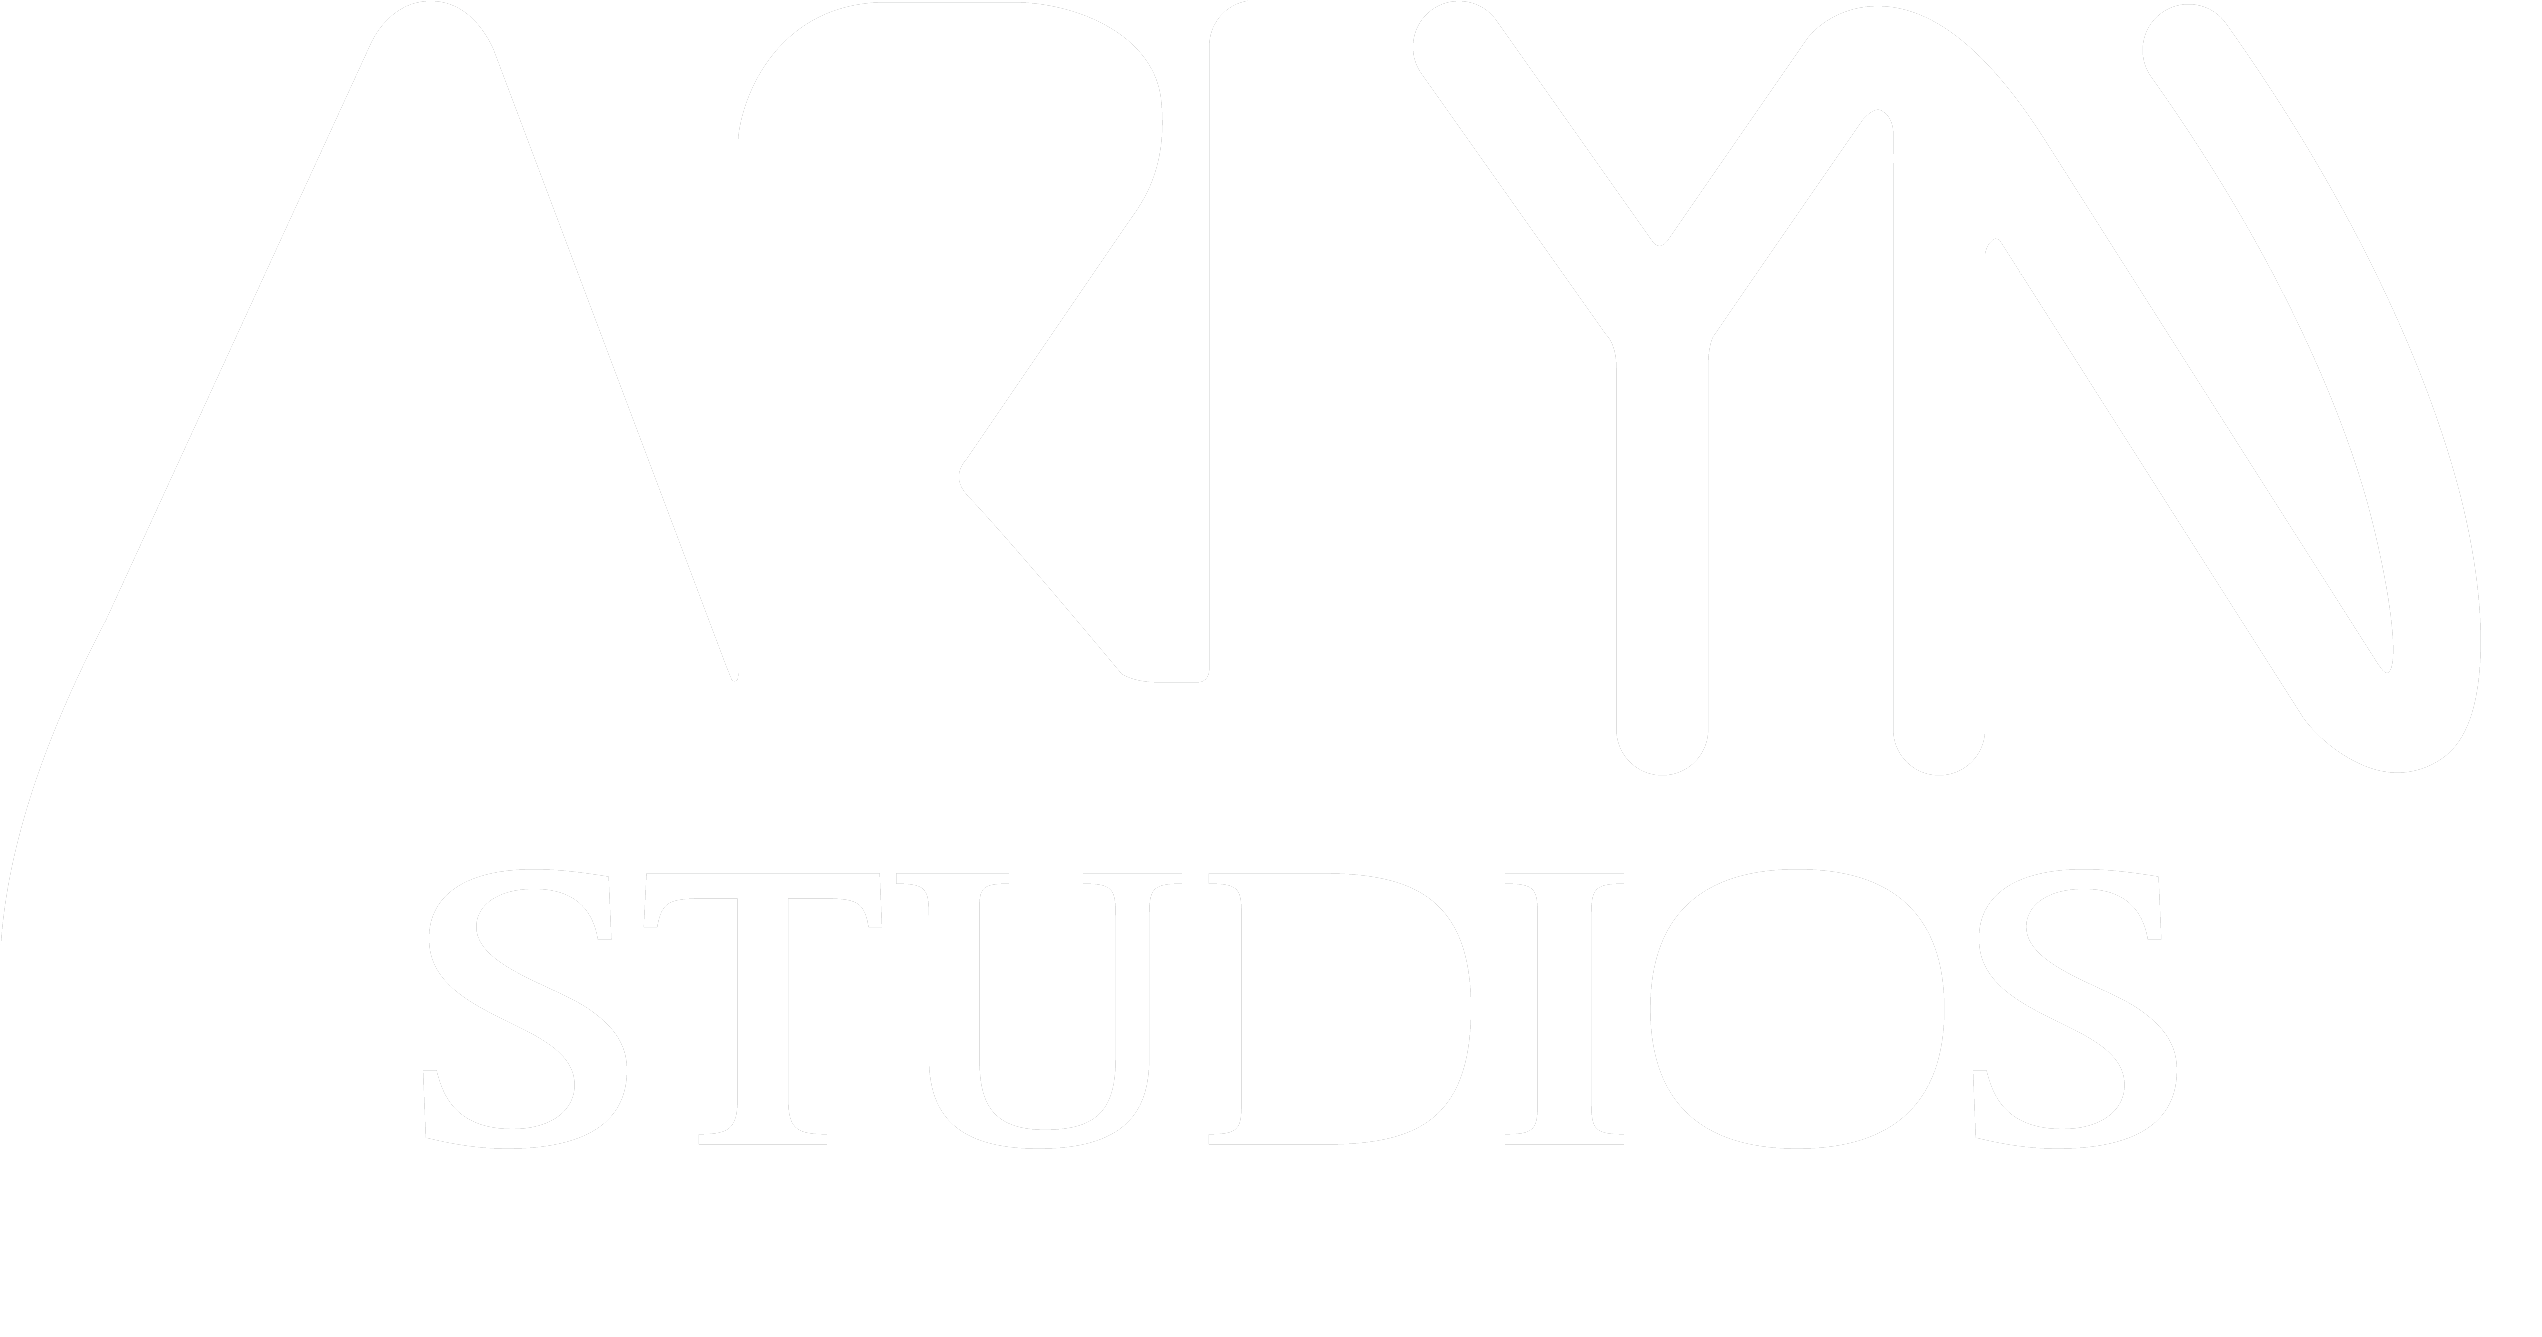 Arlyn Studios